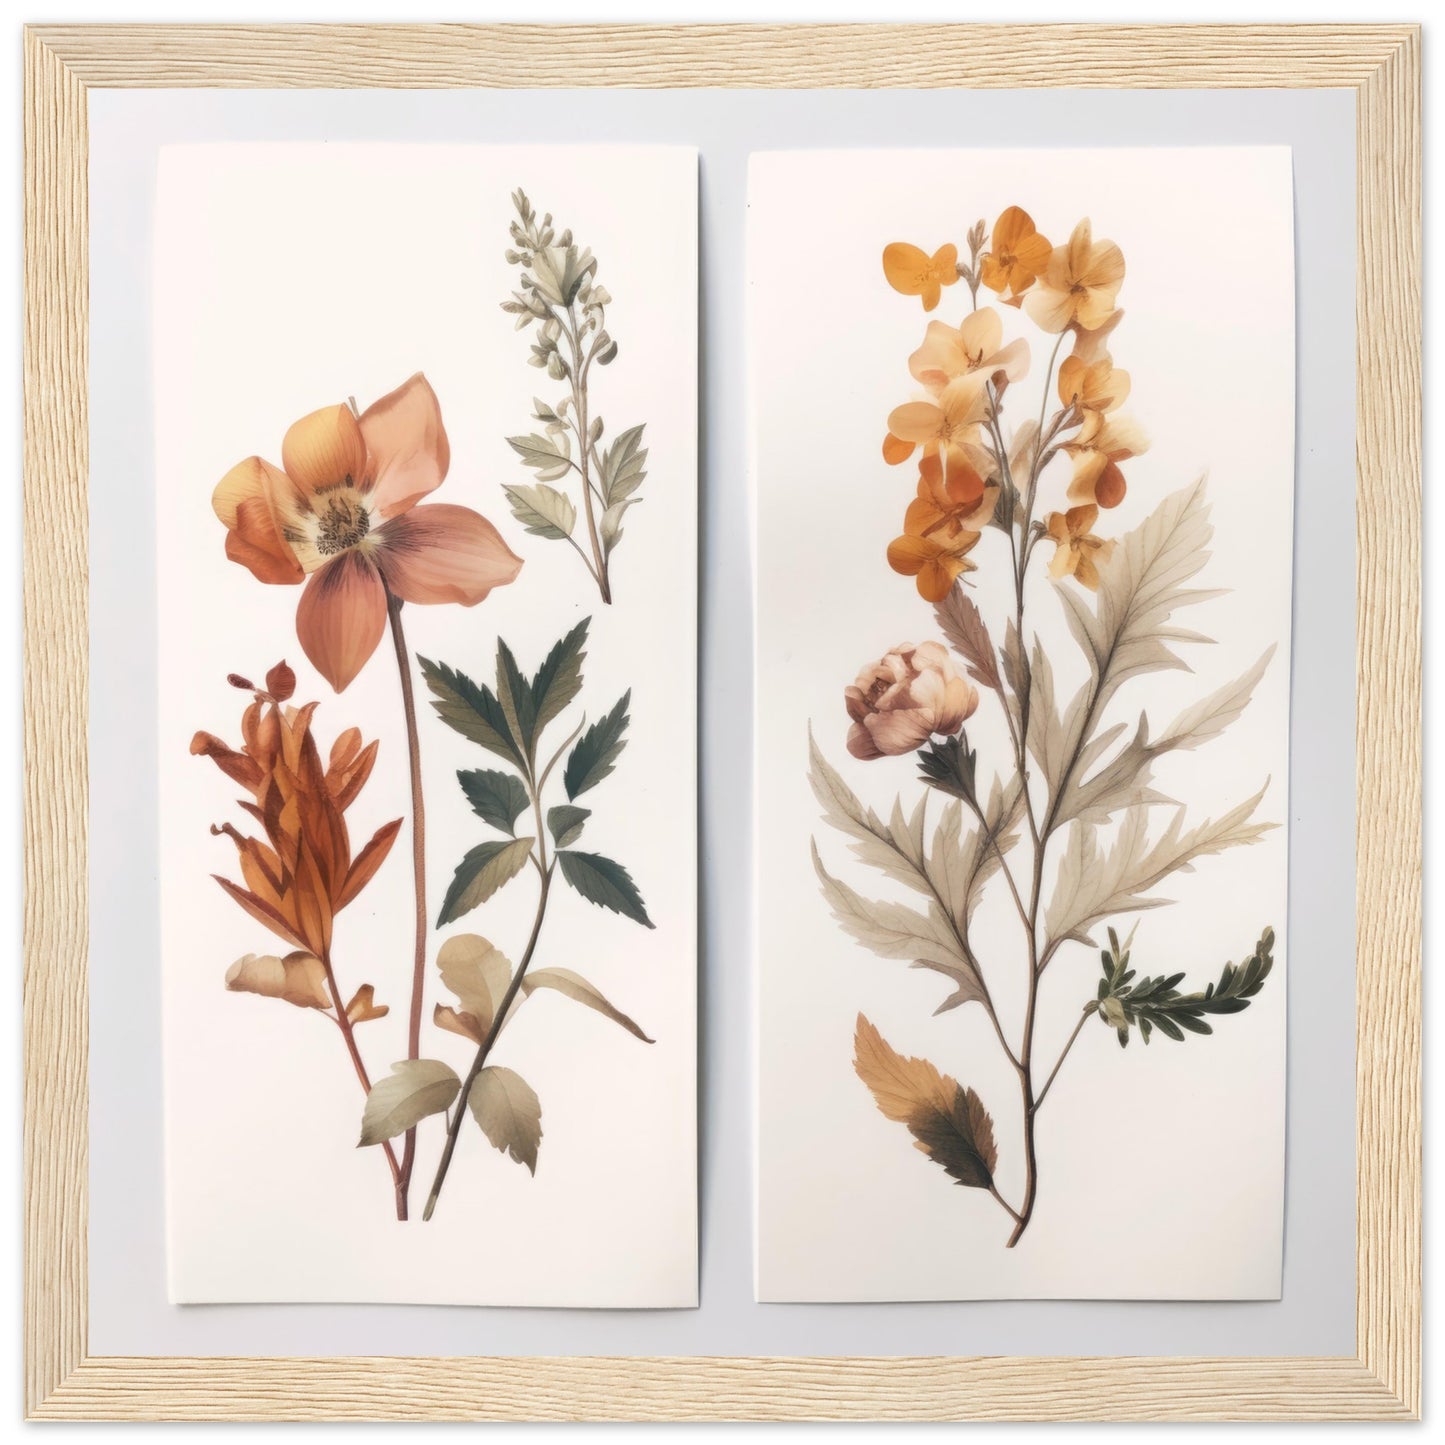 Elegance - Botanical Artwork #1- Print Room Ltd White frame 50x50 cm / 20x20"